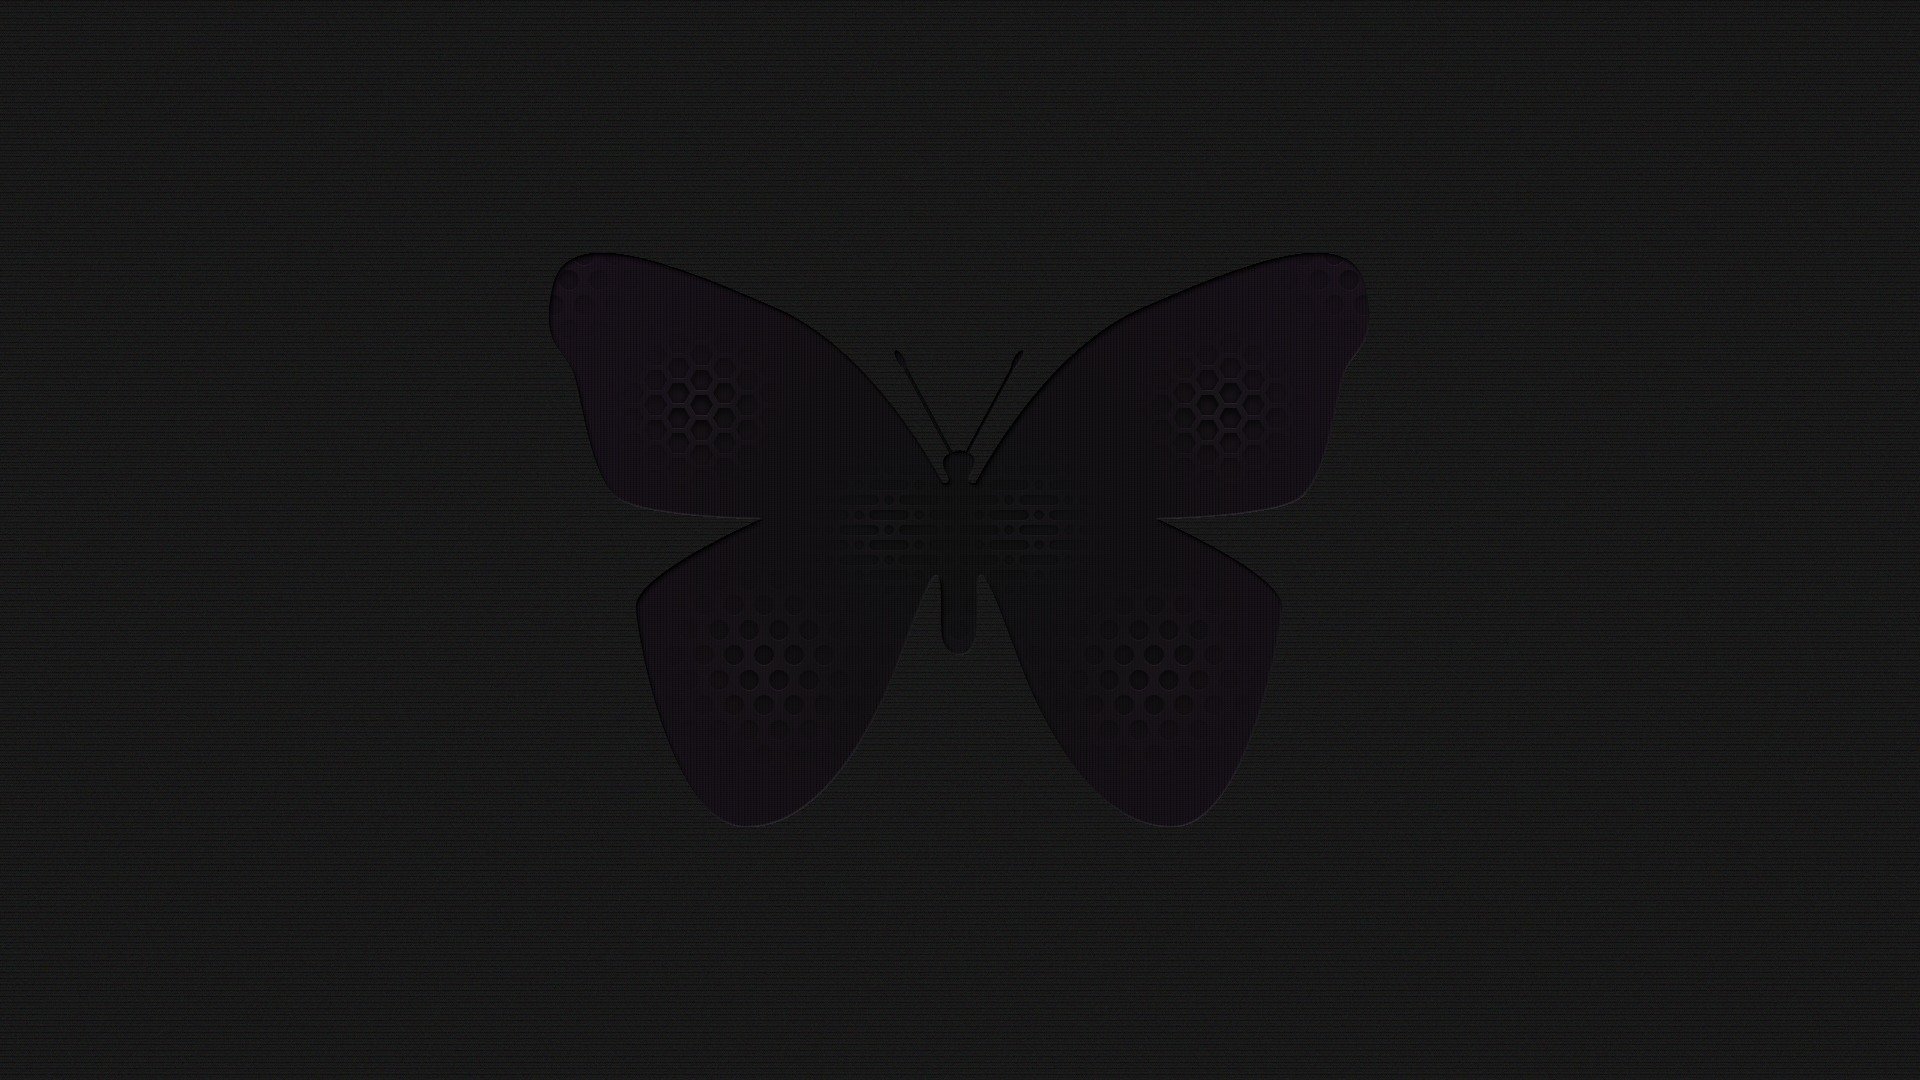 Черная бабочка на черном фоне